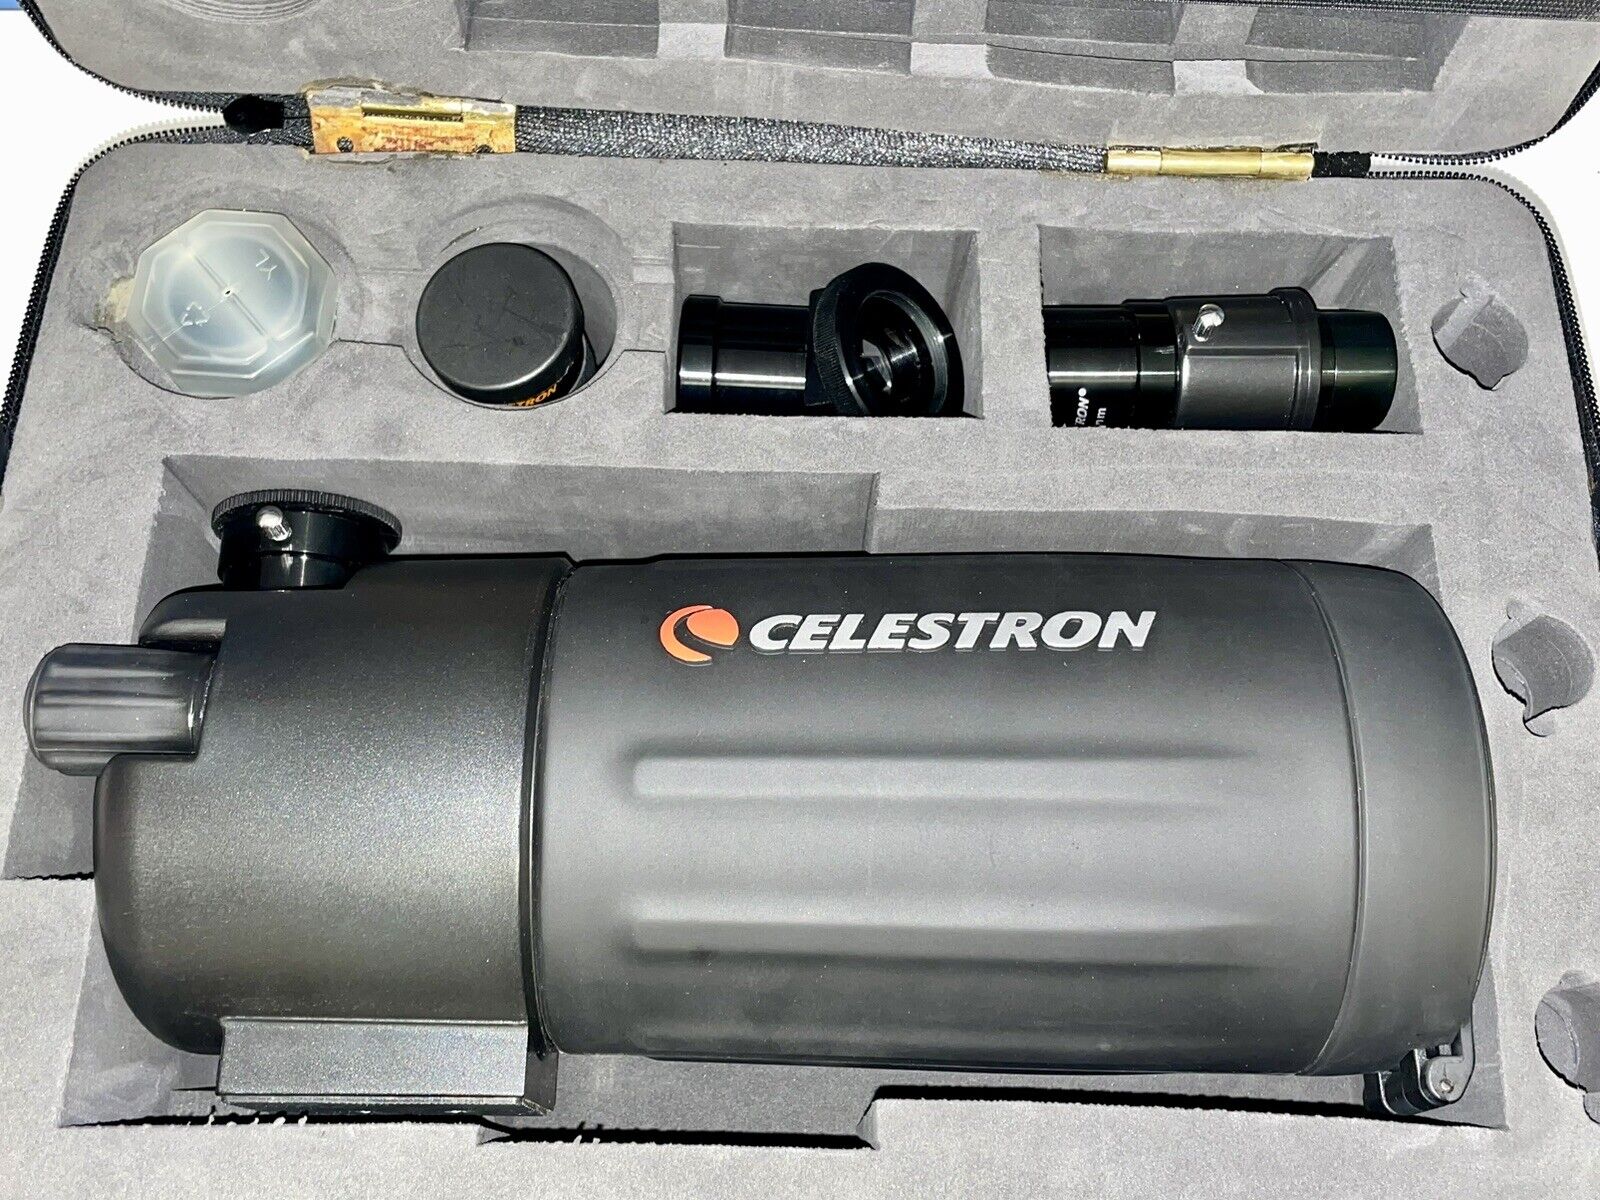 CELESTRON C90 MAK TELESCOPE